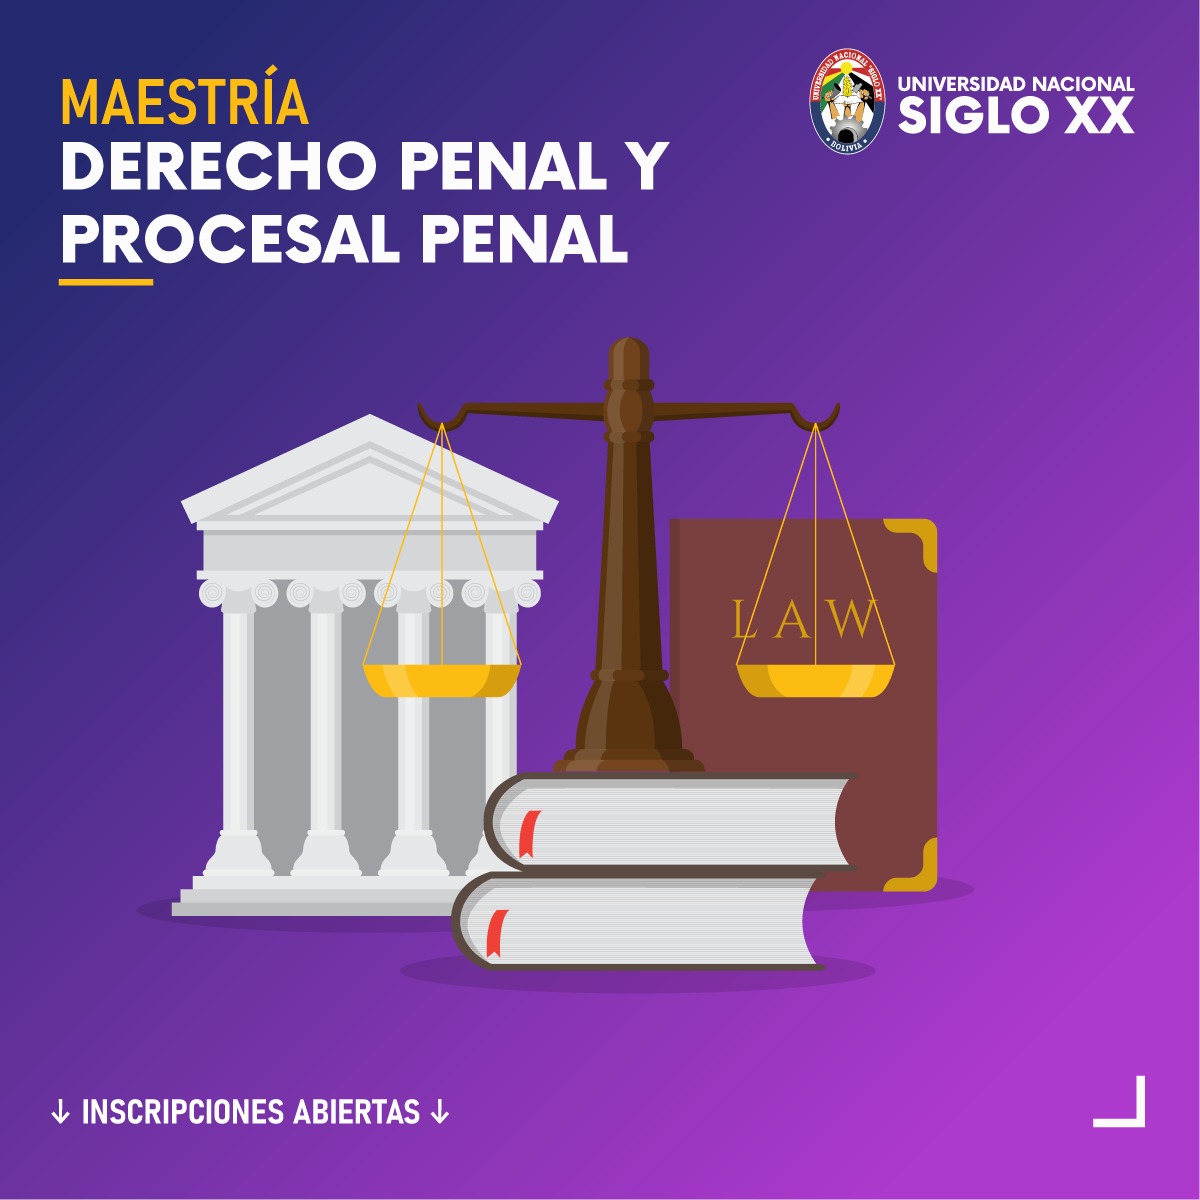 Maestría En Derecho Penal Y Procesal Penal